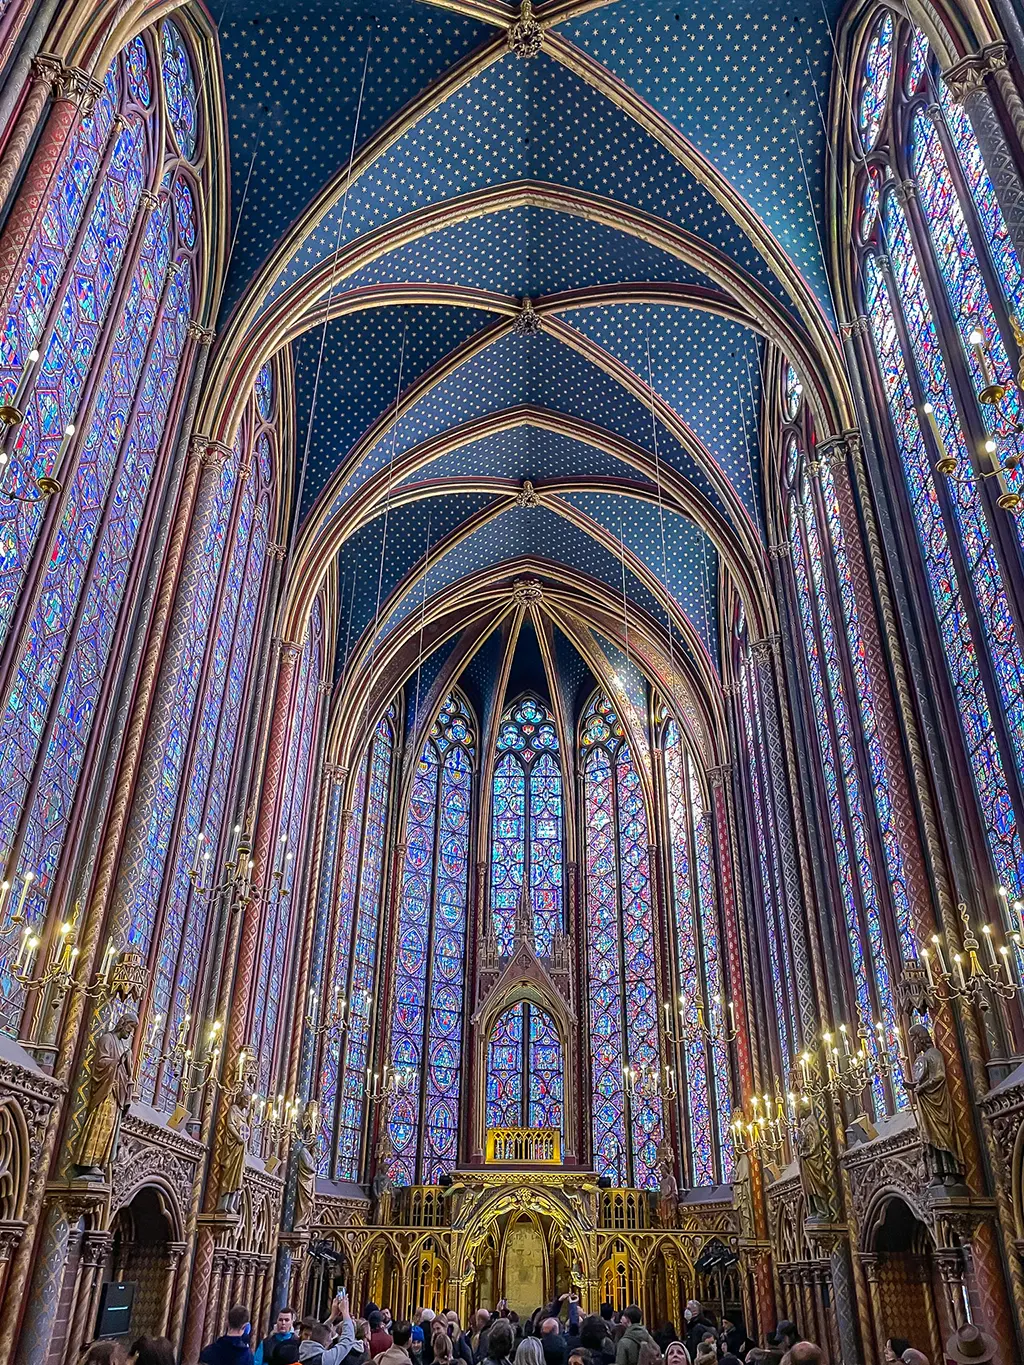 Visiter la Sainte-Chapelle de Paris, un joyau du gothique flamboyant